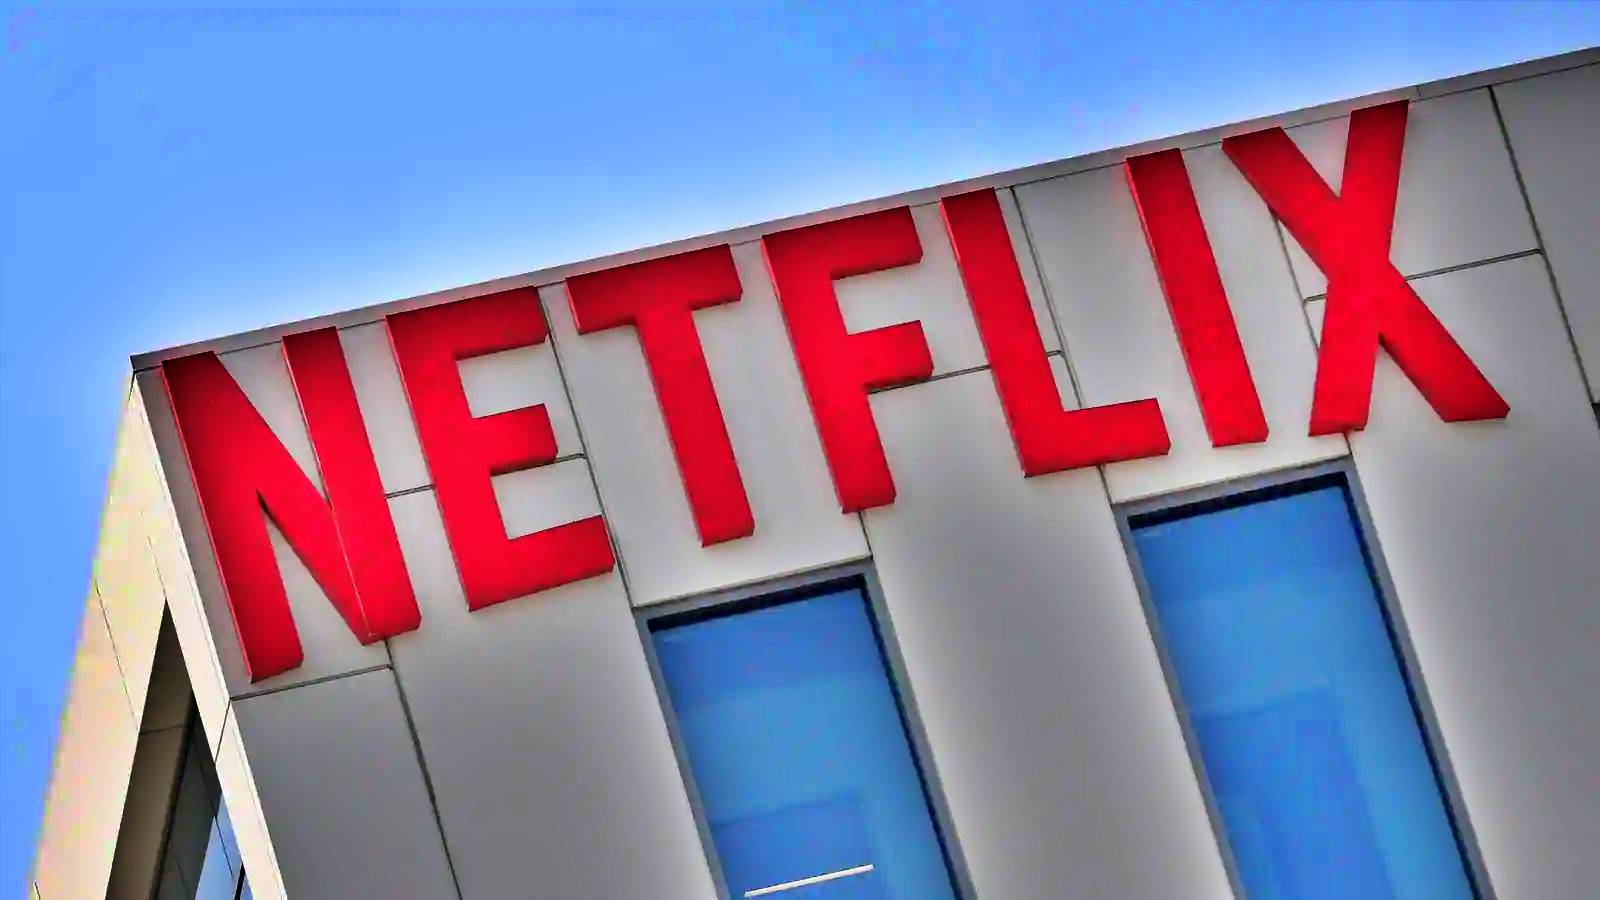 Problemas PRINCIPALES de Netflix Cambio controvertido 2022